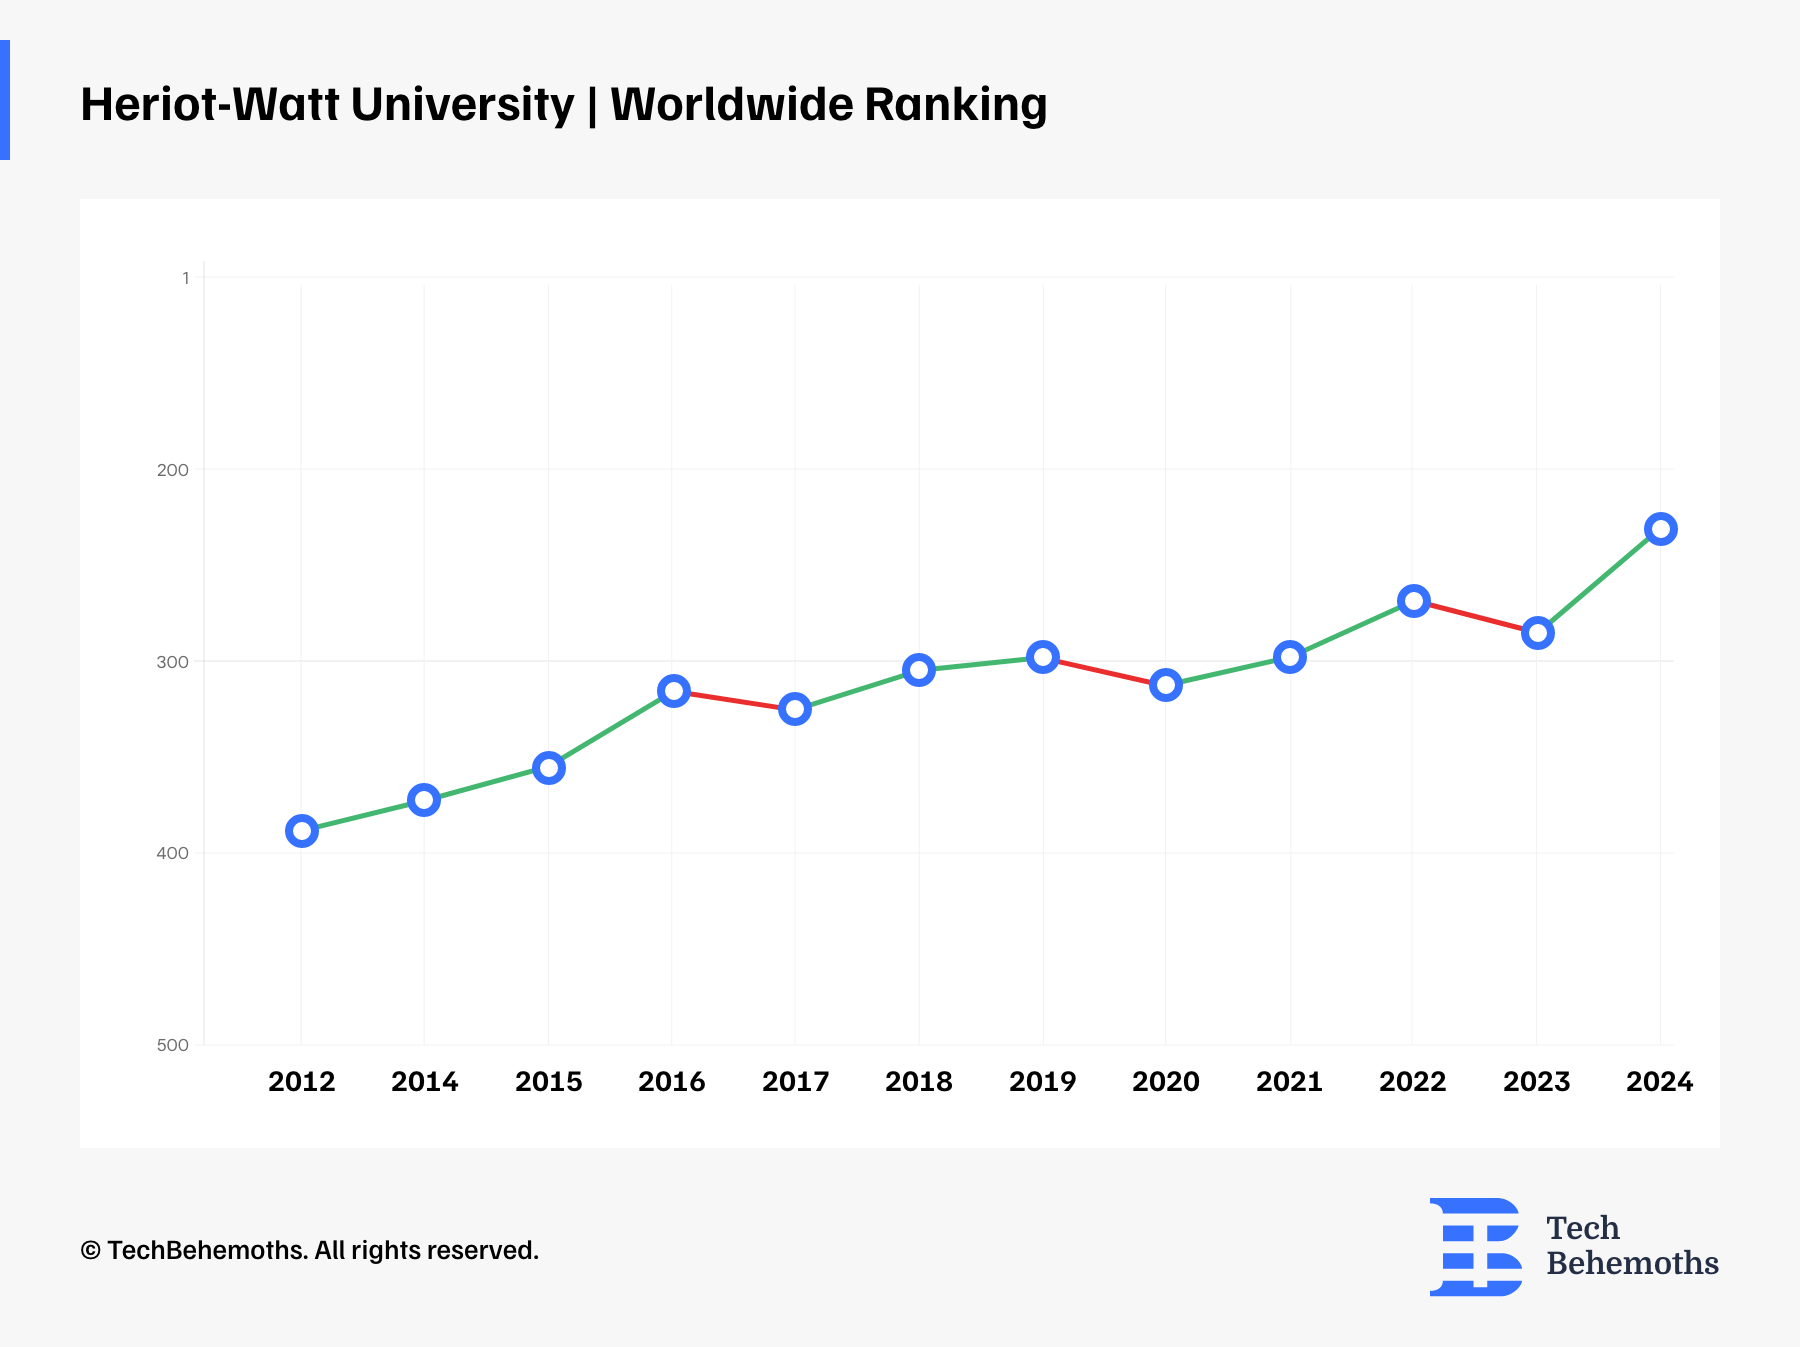 Worldwide Ranking of Heriot-Watt University